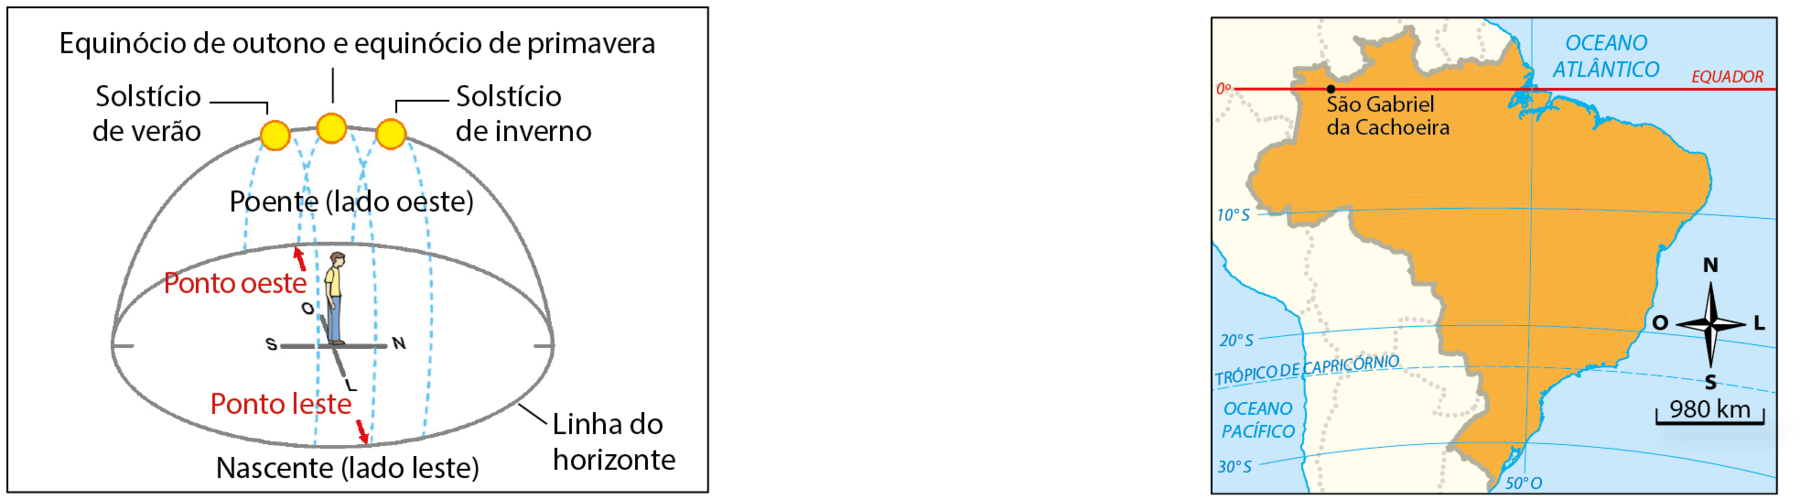 Esquema. Meia esfera cortada na horizontal (linha do horizonte) representando o planeta Terra. No centro da esfera, um homem de pé e linhas perpendiculares indicando as quatro direções. O homem está virado para a direção norte. Há três bolinhas amarelas, representando o Sol e linhas tracejadas azuis, representado sua trajetória aparente do poente (lado oeste) à nascente (lado leste). Setas vermelhas indicam os pontos leste e oeste. Uma bolinha amarela está no topo, paralela ao centro da esfera. Linha de chamada para Equinócio de outono e equinócio de primavera. Uma está à esquerda, linha de chamada para Solstício de verão. Outra está do lado direito, linha de chamada para Solstício de inverno.  Mapa do Brasil. Destaque para a localização de São Gabriel da Cachoeira, no norte do país, sobre a  linha do Equador. No canto inferior direito, rosa dos ventos e escala de 0 a 980 quilômetros.